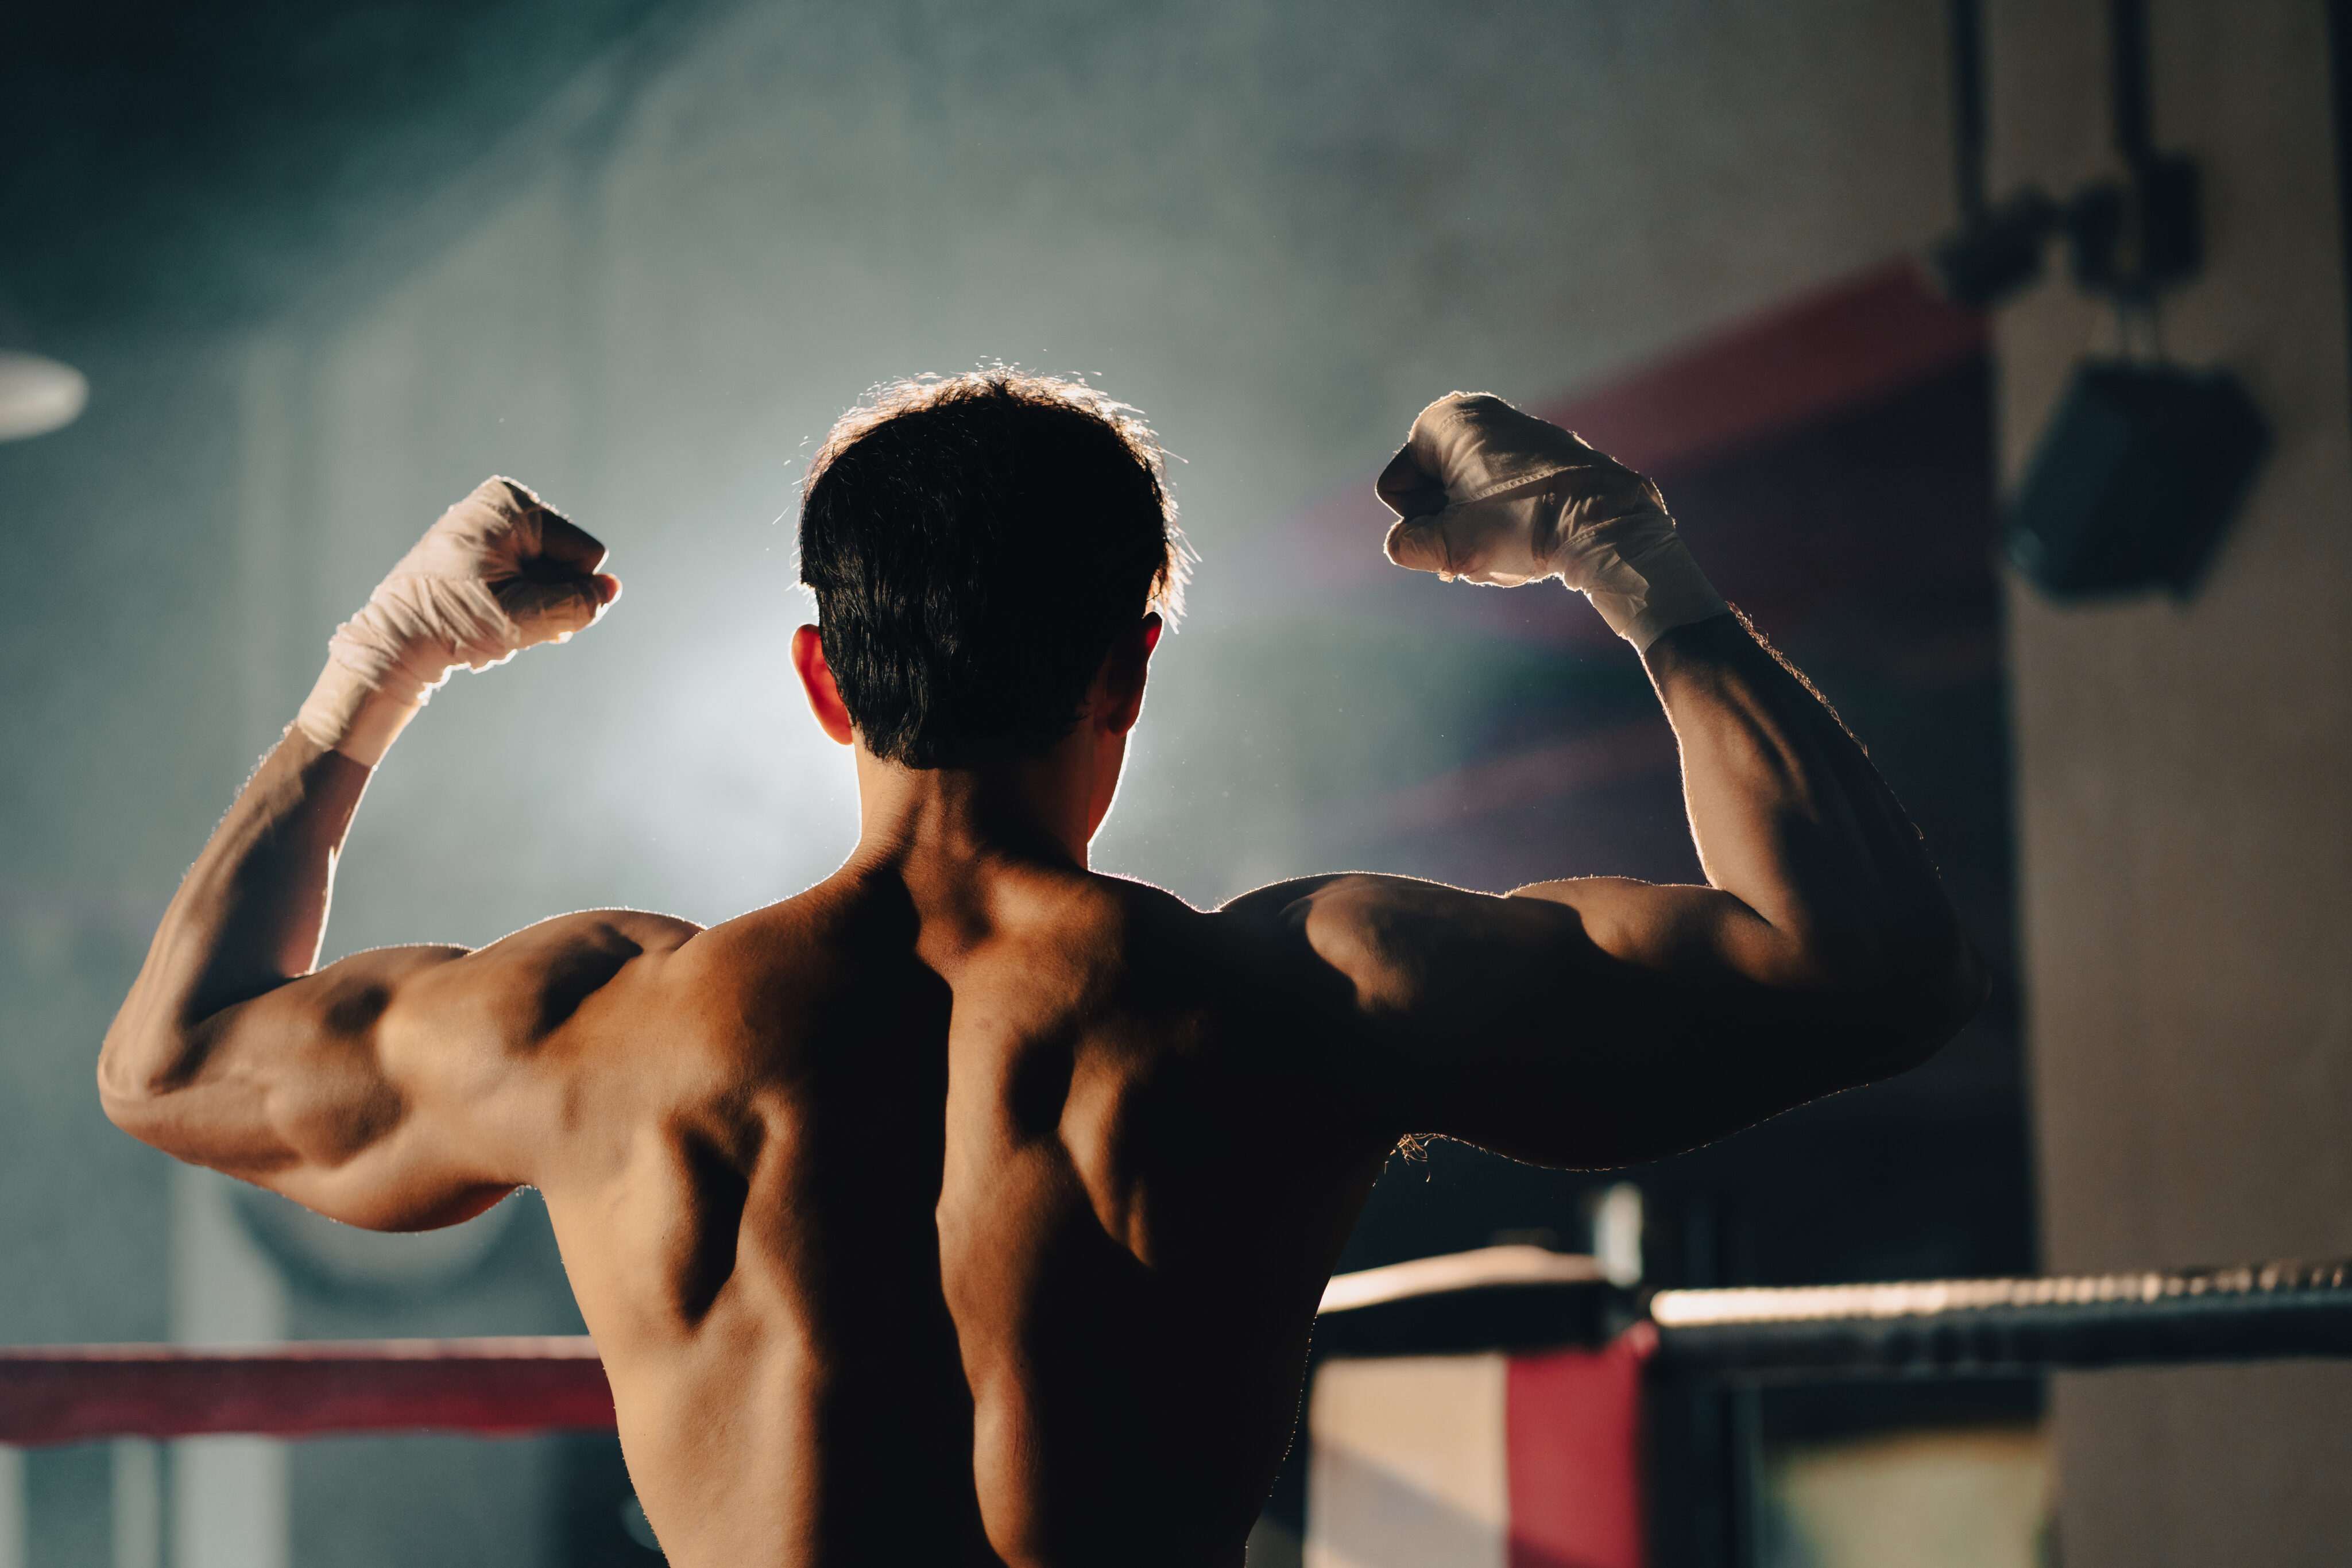 Toxische Maskulinität: Mann reckt nach einem Boxkampf Hände in die Luft.